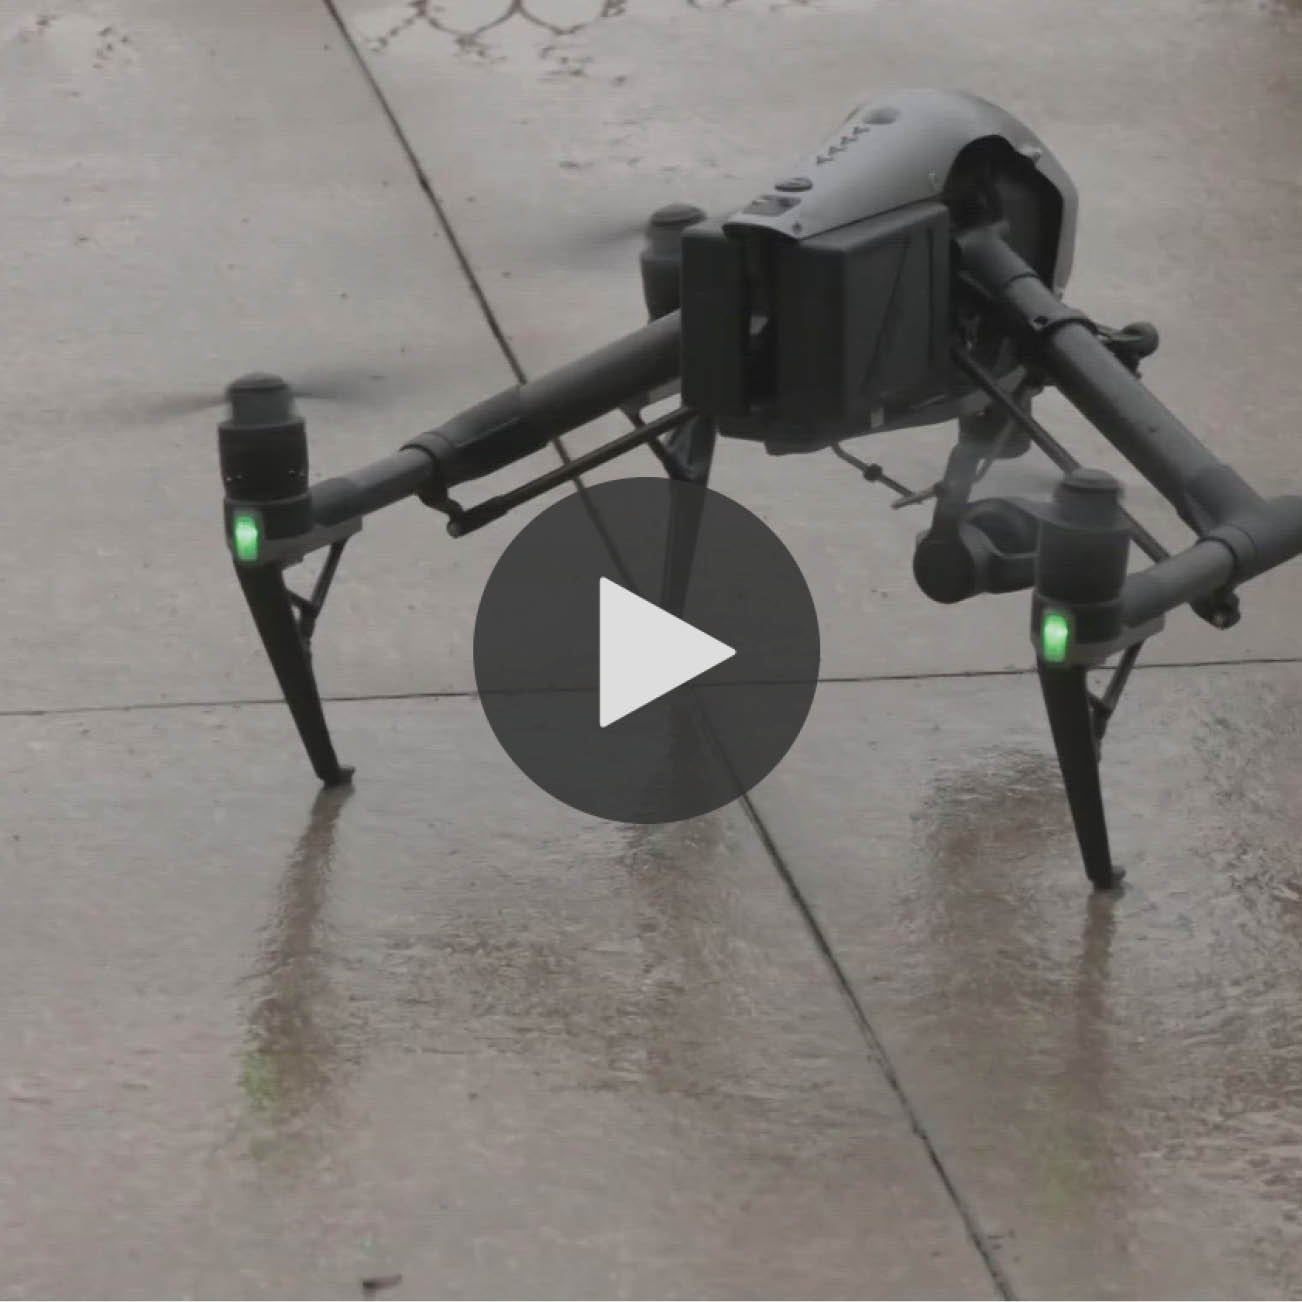 drone video